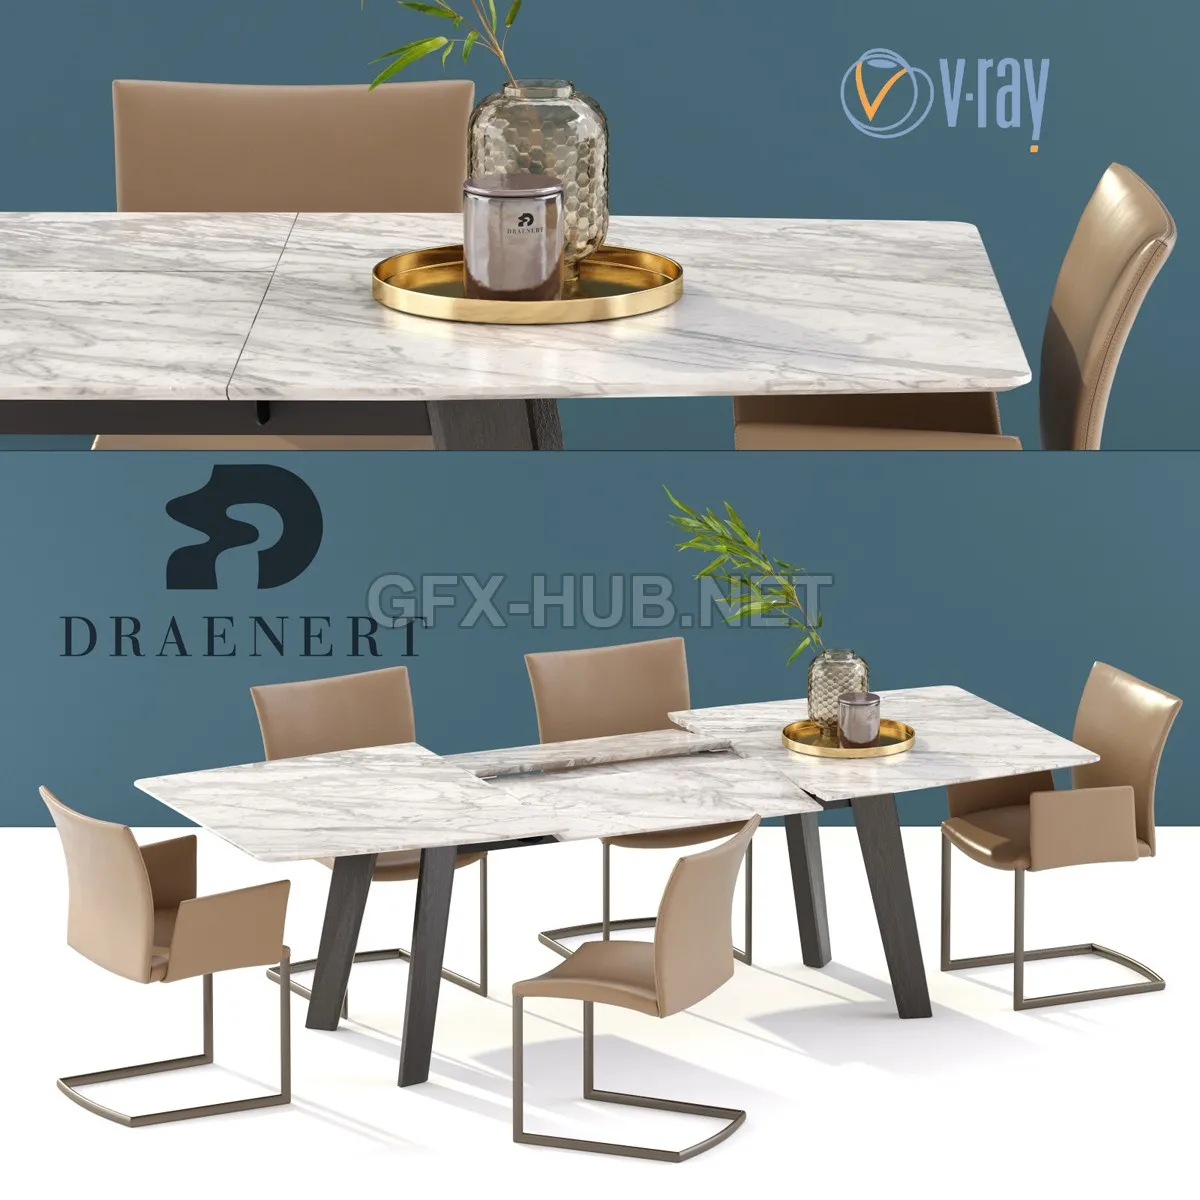 FURNITURE 3D MODELS – DRAENERT Nobile Swing chair Fontana table